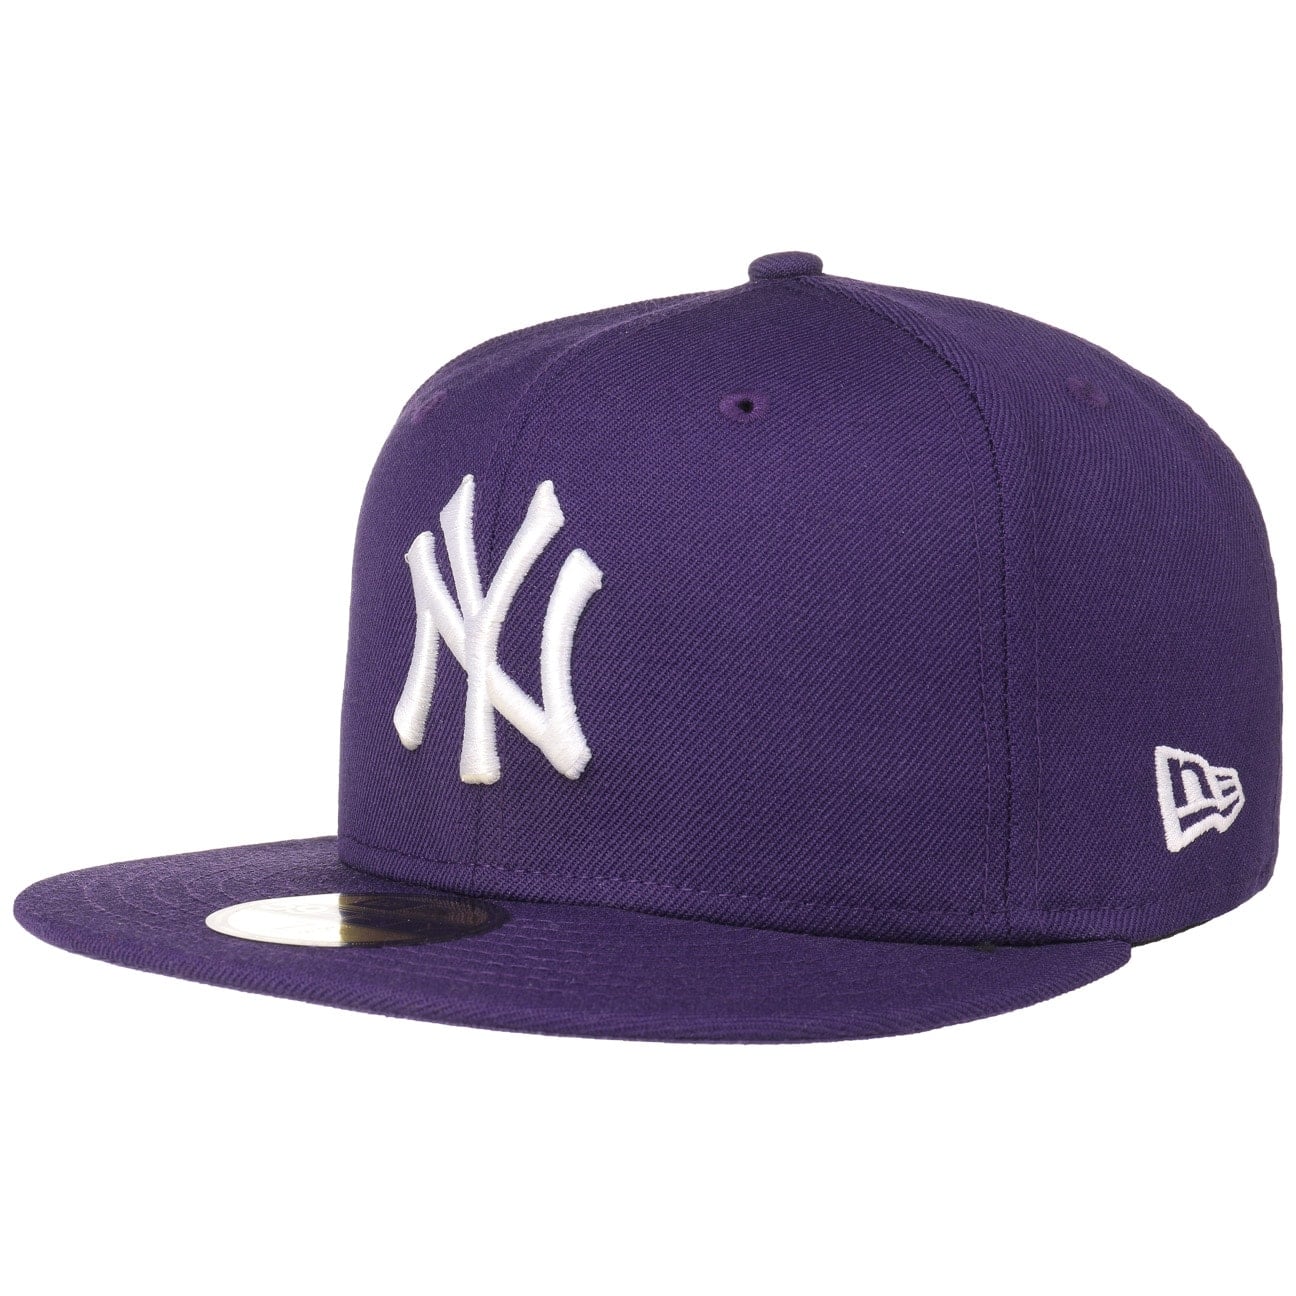 59Fifty MLB Basic NY Cap by New Era von new era